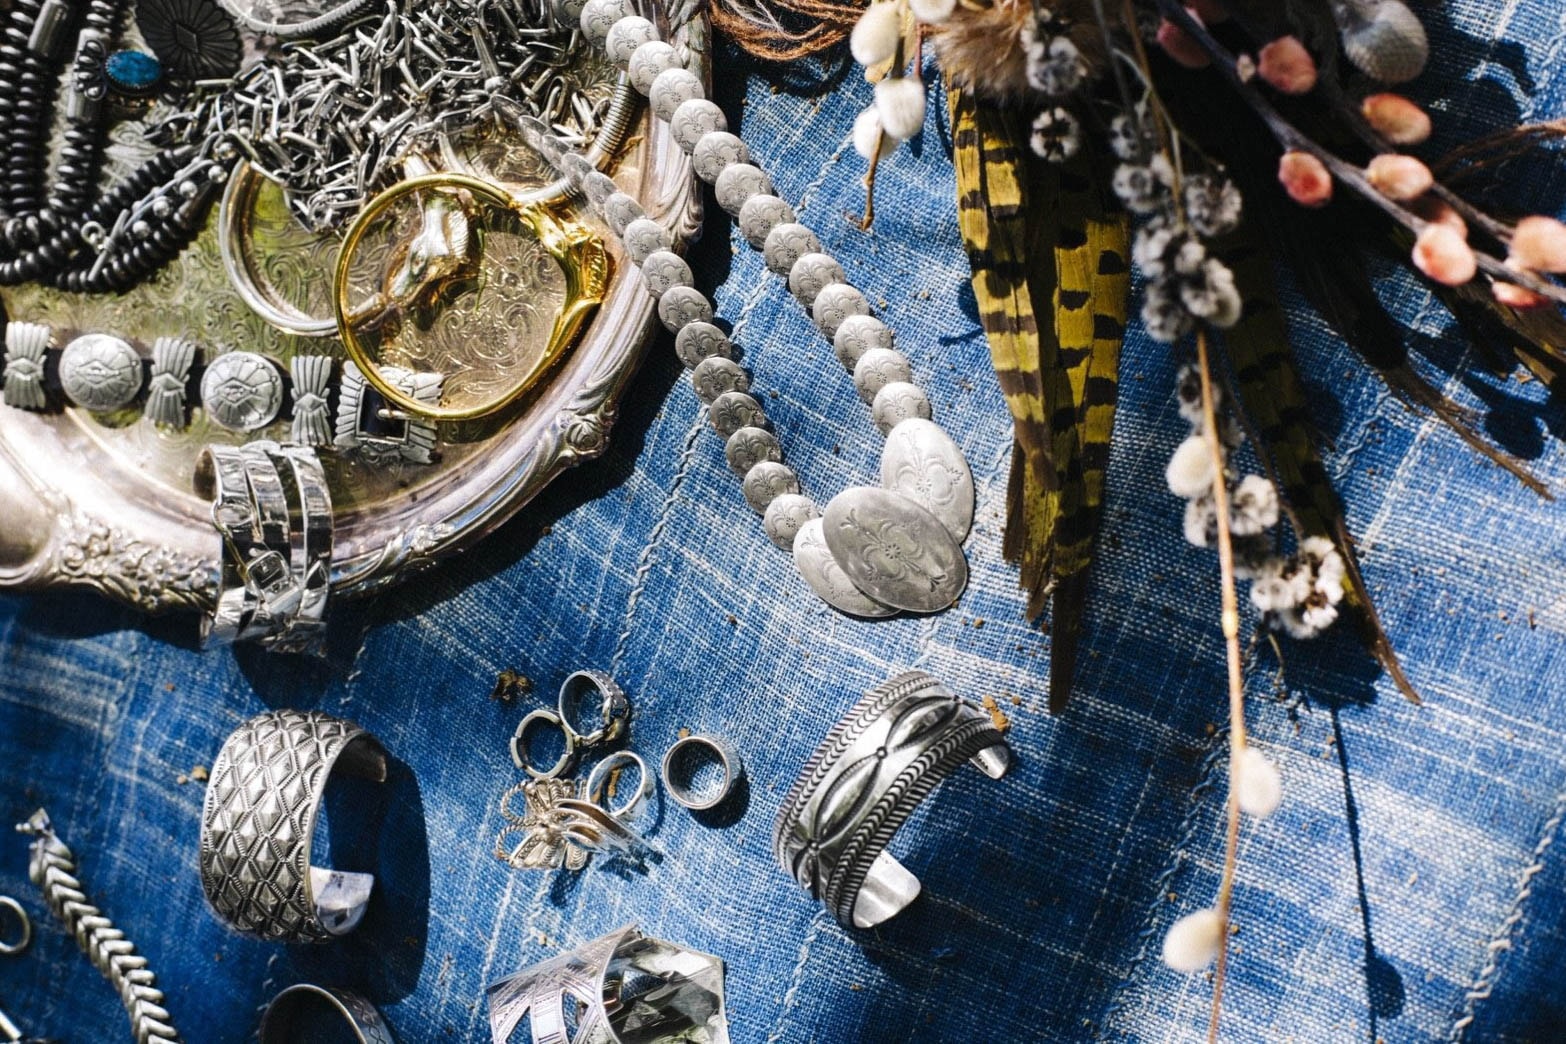 Vintage Jewelry Market: 他に類を見ない圧巻の品揃えで開催されるヴィンテージジュエリーマーケット 超希少価値の高いヴィンテージの〈Hermès〉、メキシカン/ナバホジュエリーを購入できるまたとないポップアップイベントに是が非でも足を運ぶべし